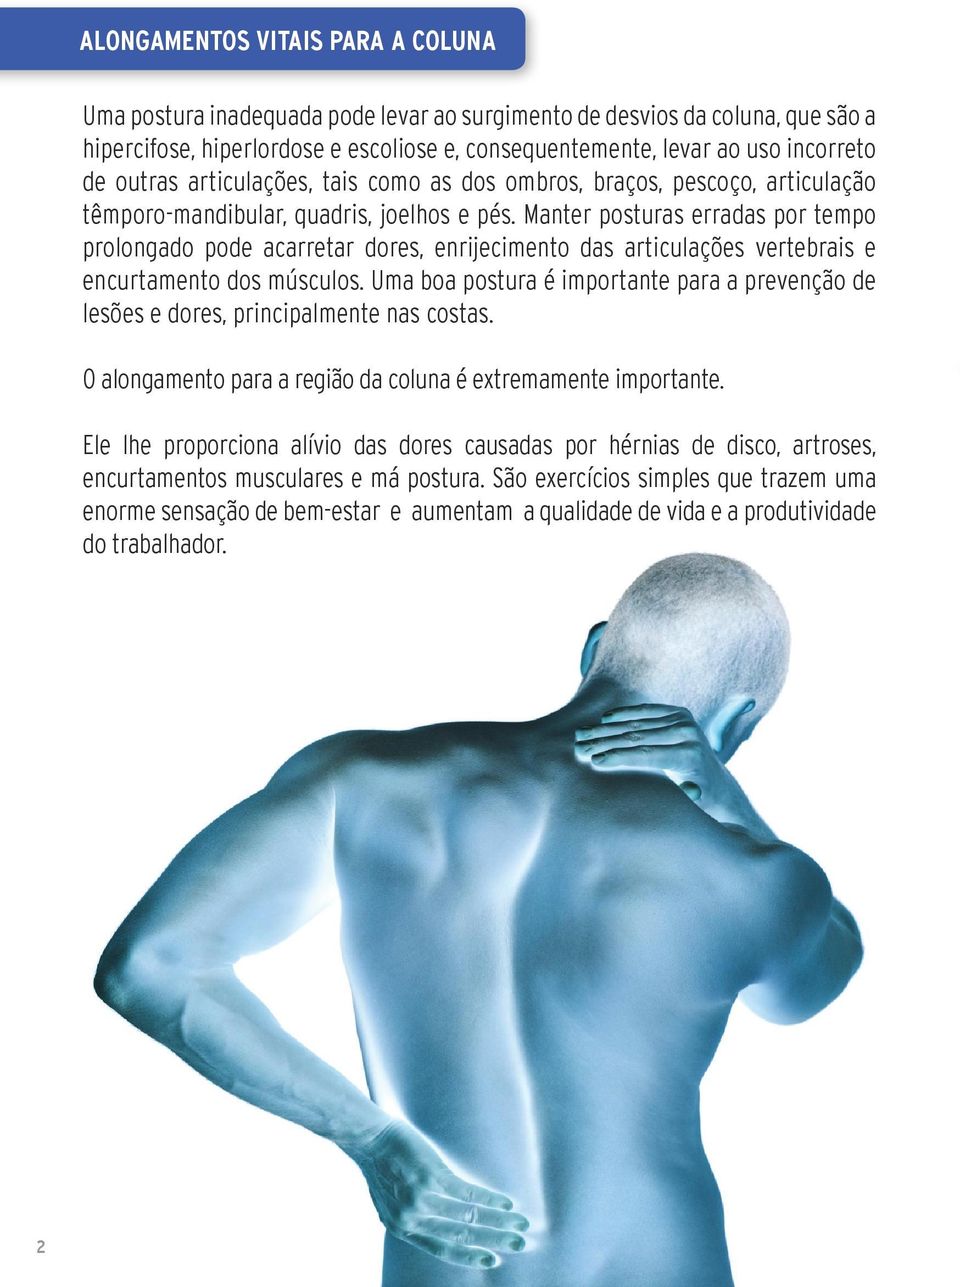 Manter posturas erradas por tempo prolongado pode acarretar dores, enrijecimento das articulações vertebrais e encurtamento dos músculos.